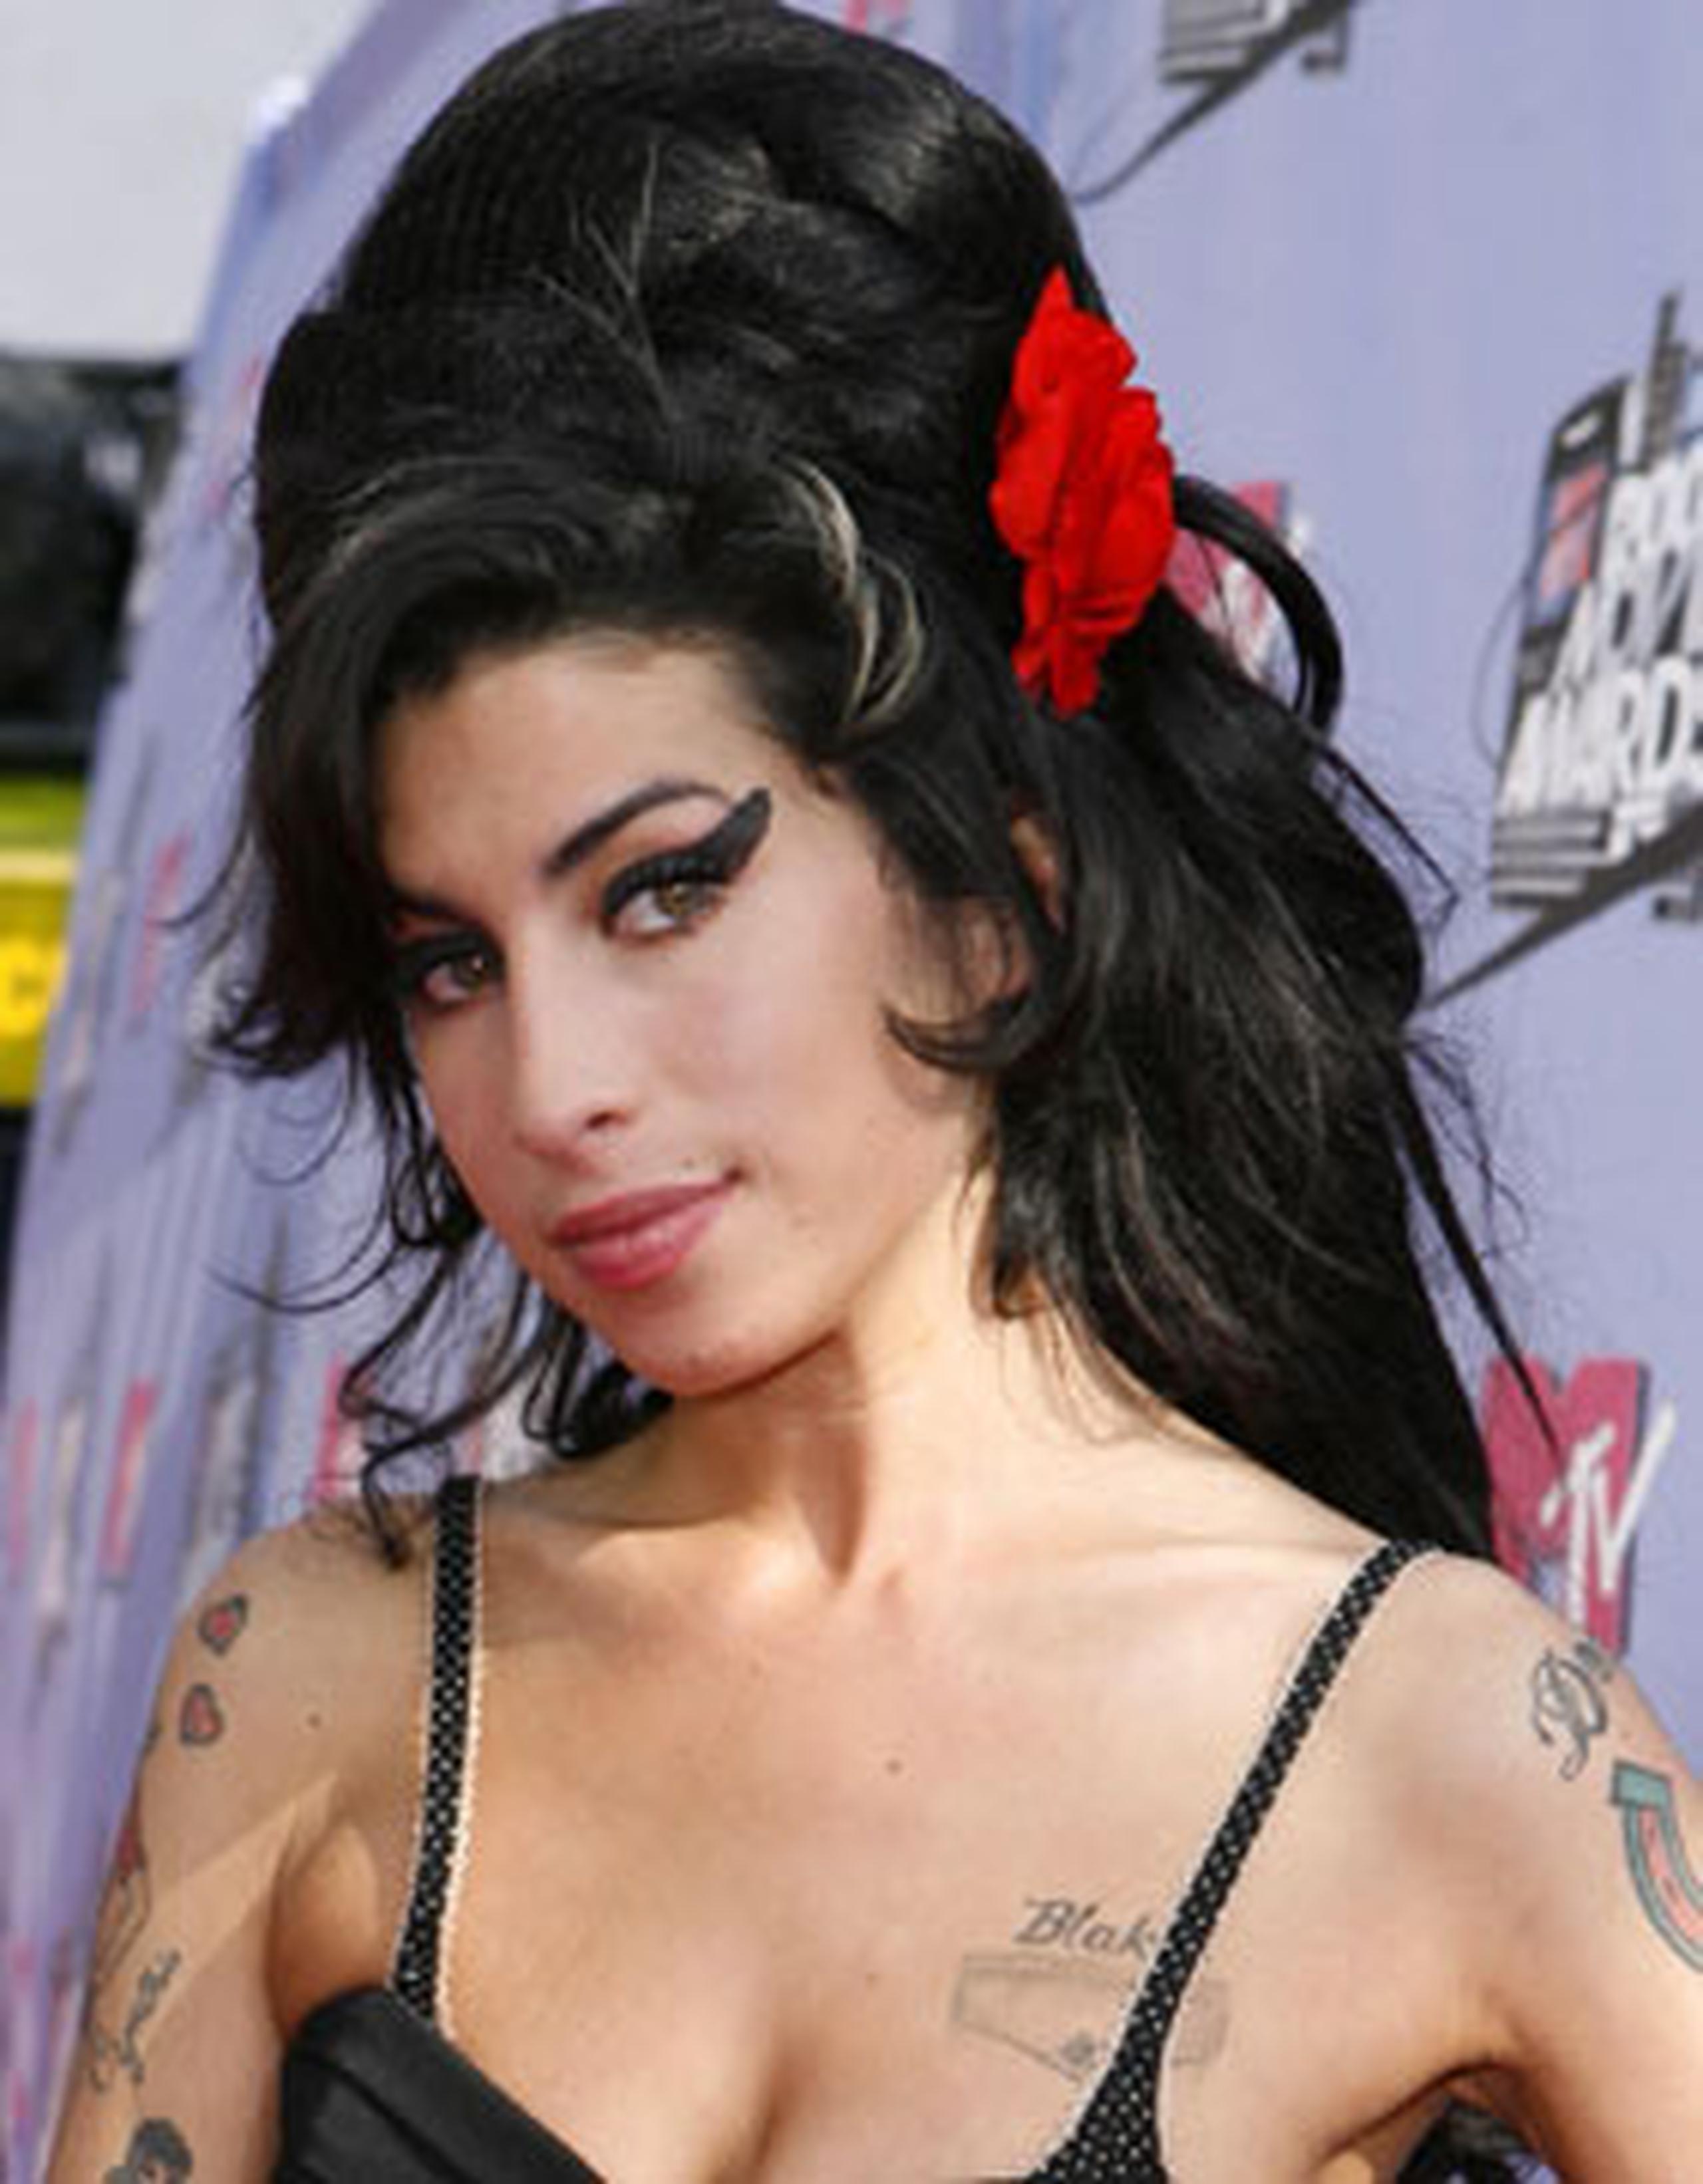 Amy Winehouse, fue encontrada muerta en su apartamento el 23 de julio de 2011, tras una larga batalla contra el alcohol y las drogas. (Archivo)